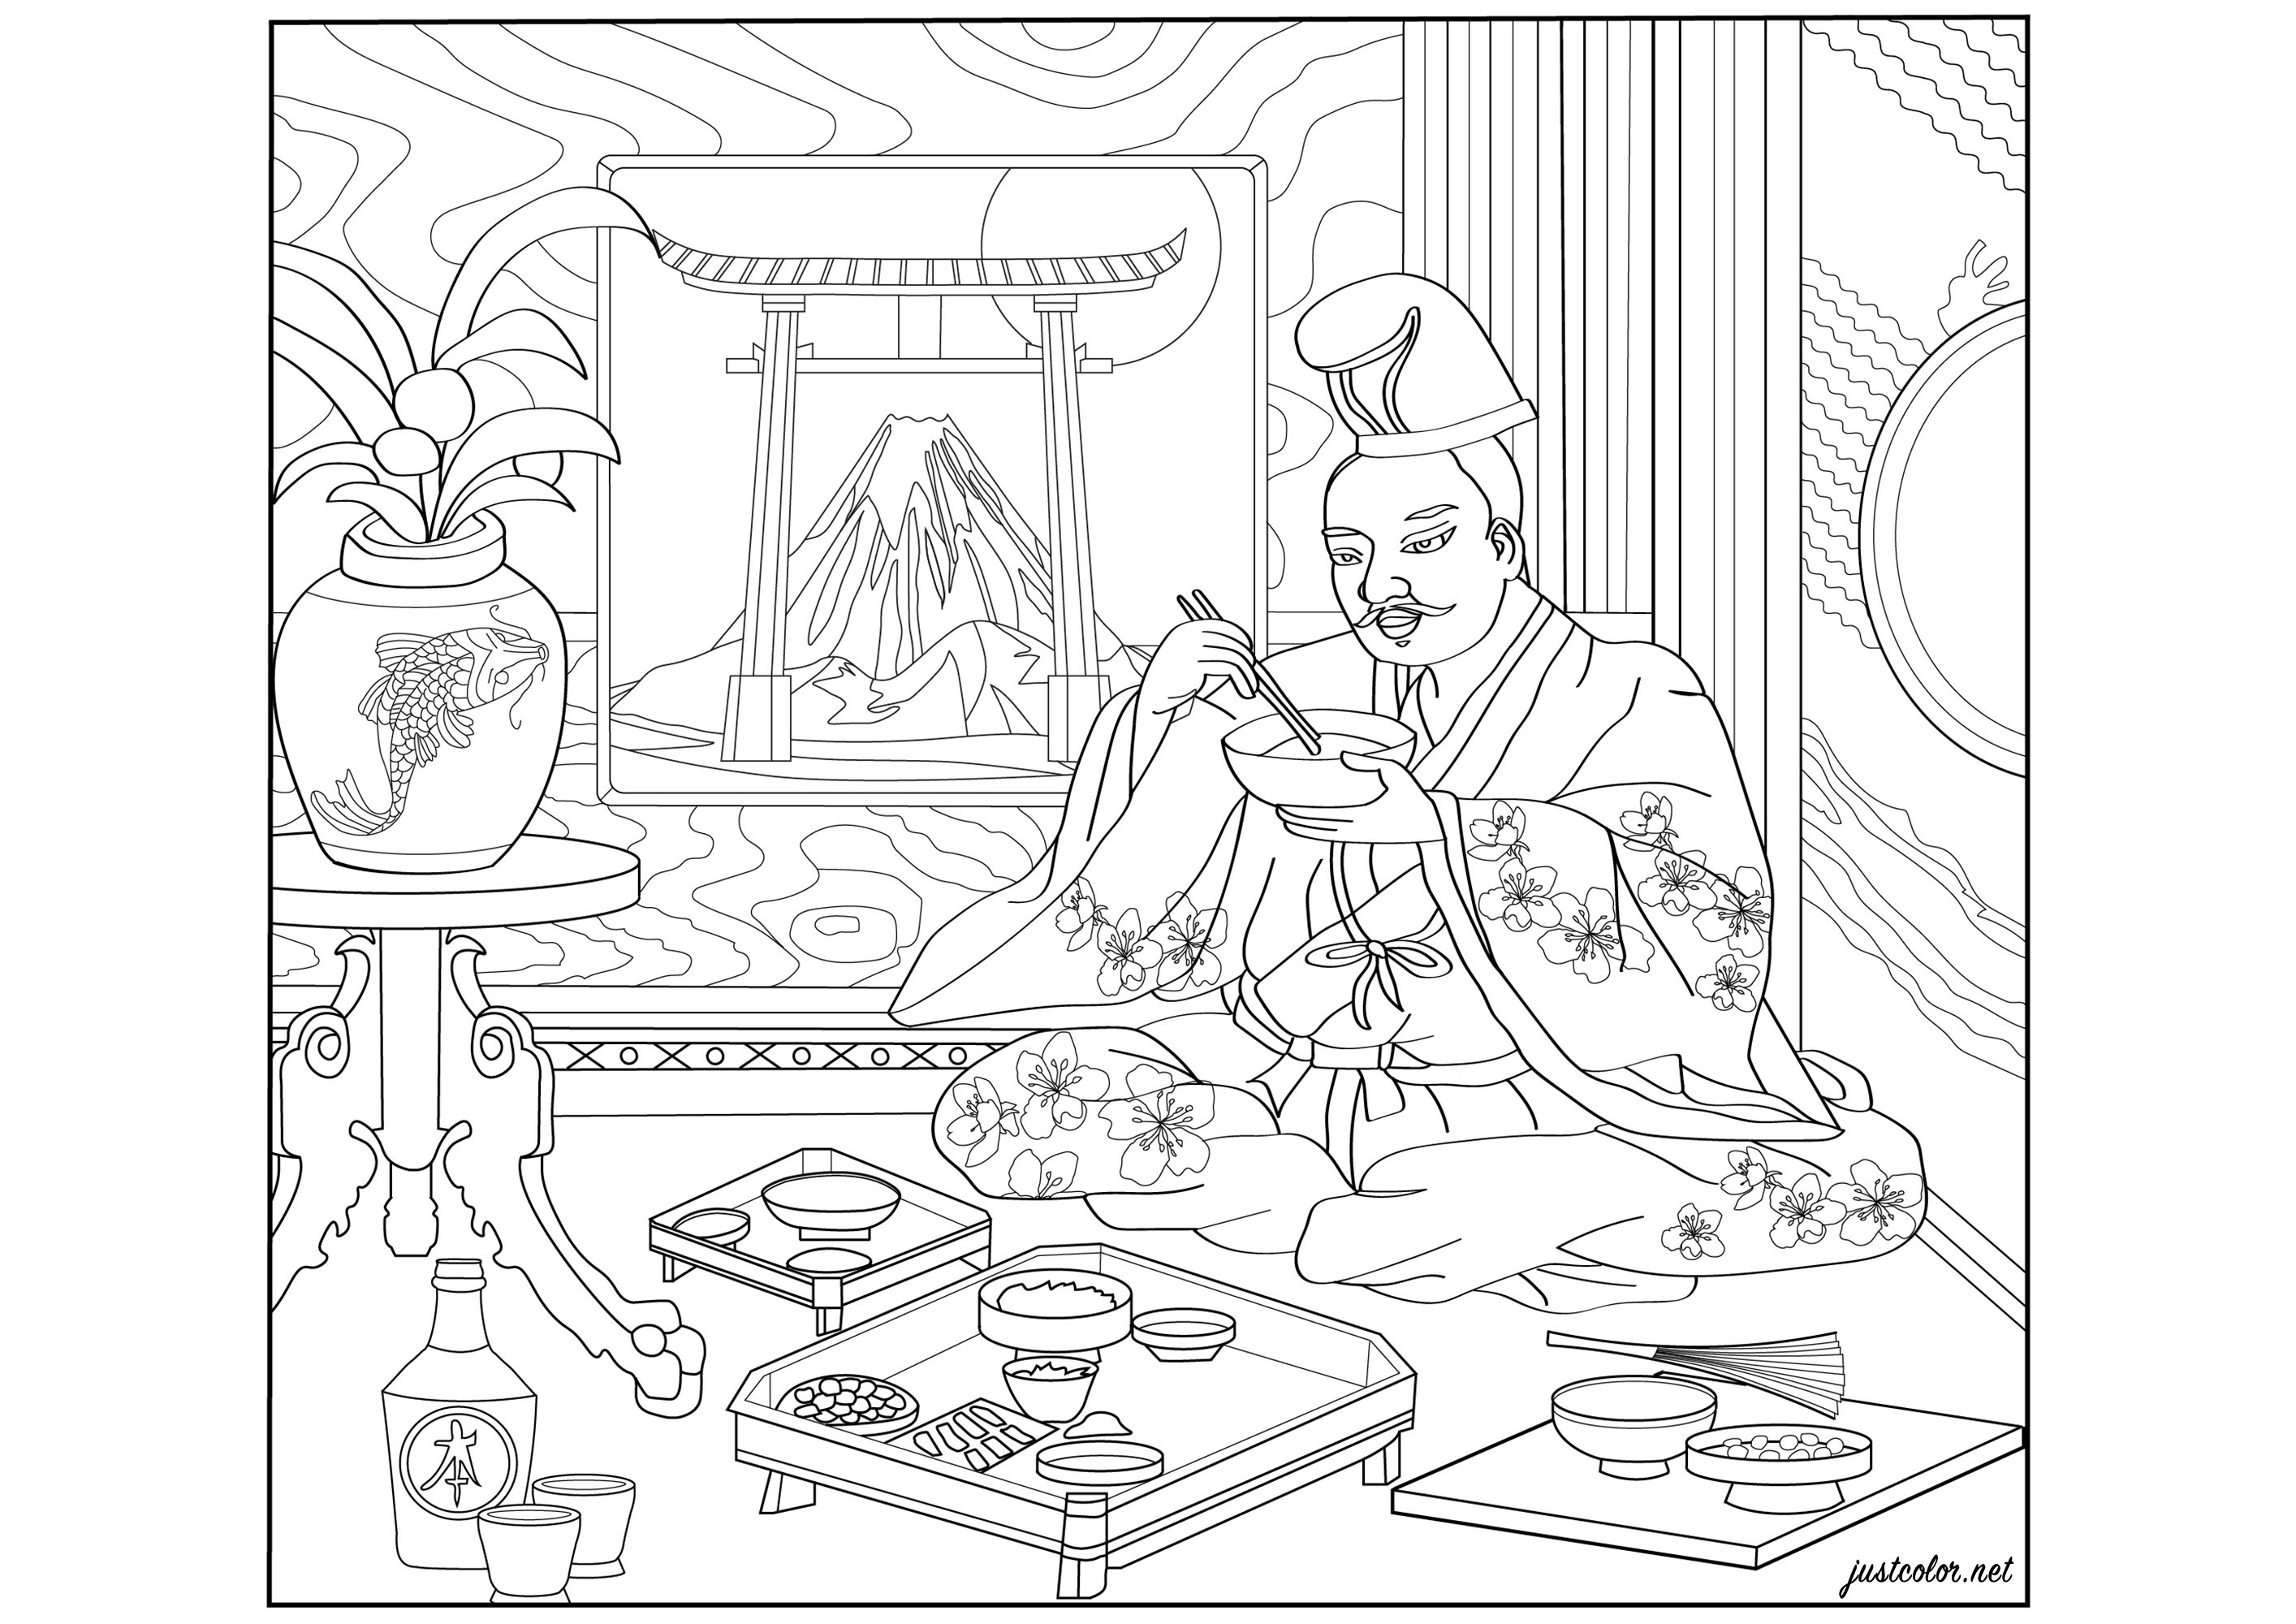 Coloreado creado a partir de una ilustración del libro 'Sobre los méritos comparativos del sake y el arroz (Ilustrado por un pergamino japonés del siglo XVII)'. (BnF, Diane de Selliers éditeur)